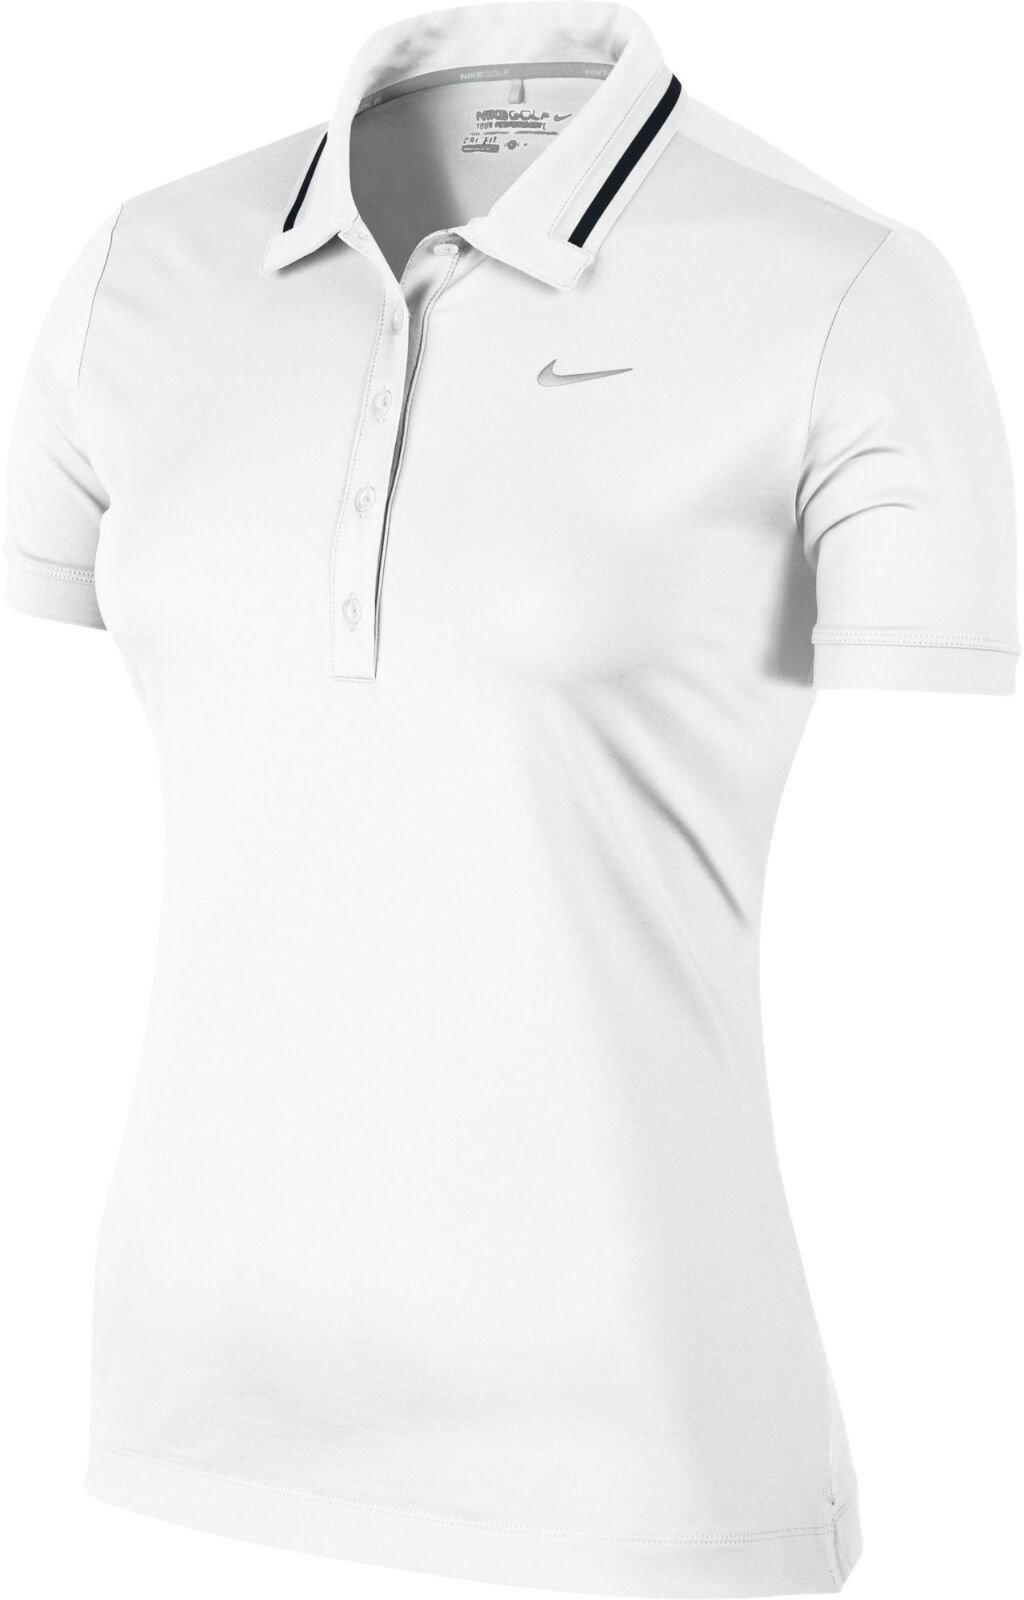 Πουκάμισα Πόλο Nike Icon Swoosh Tech Womens Polo Shirt White/Metallic Silver XL